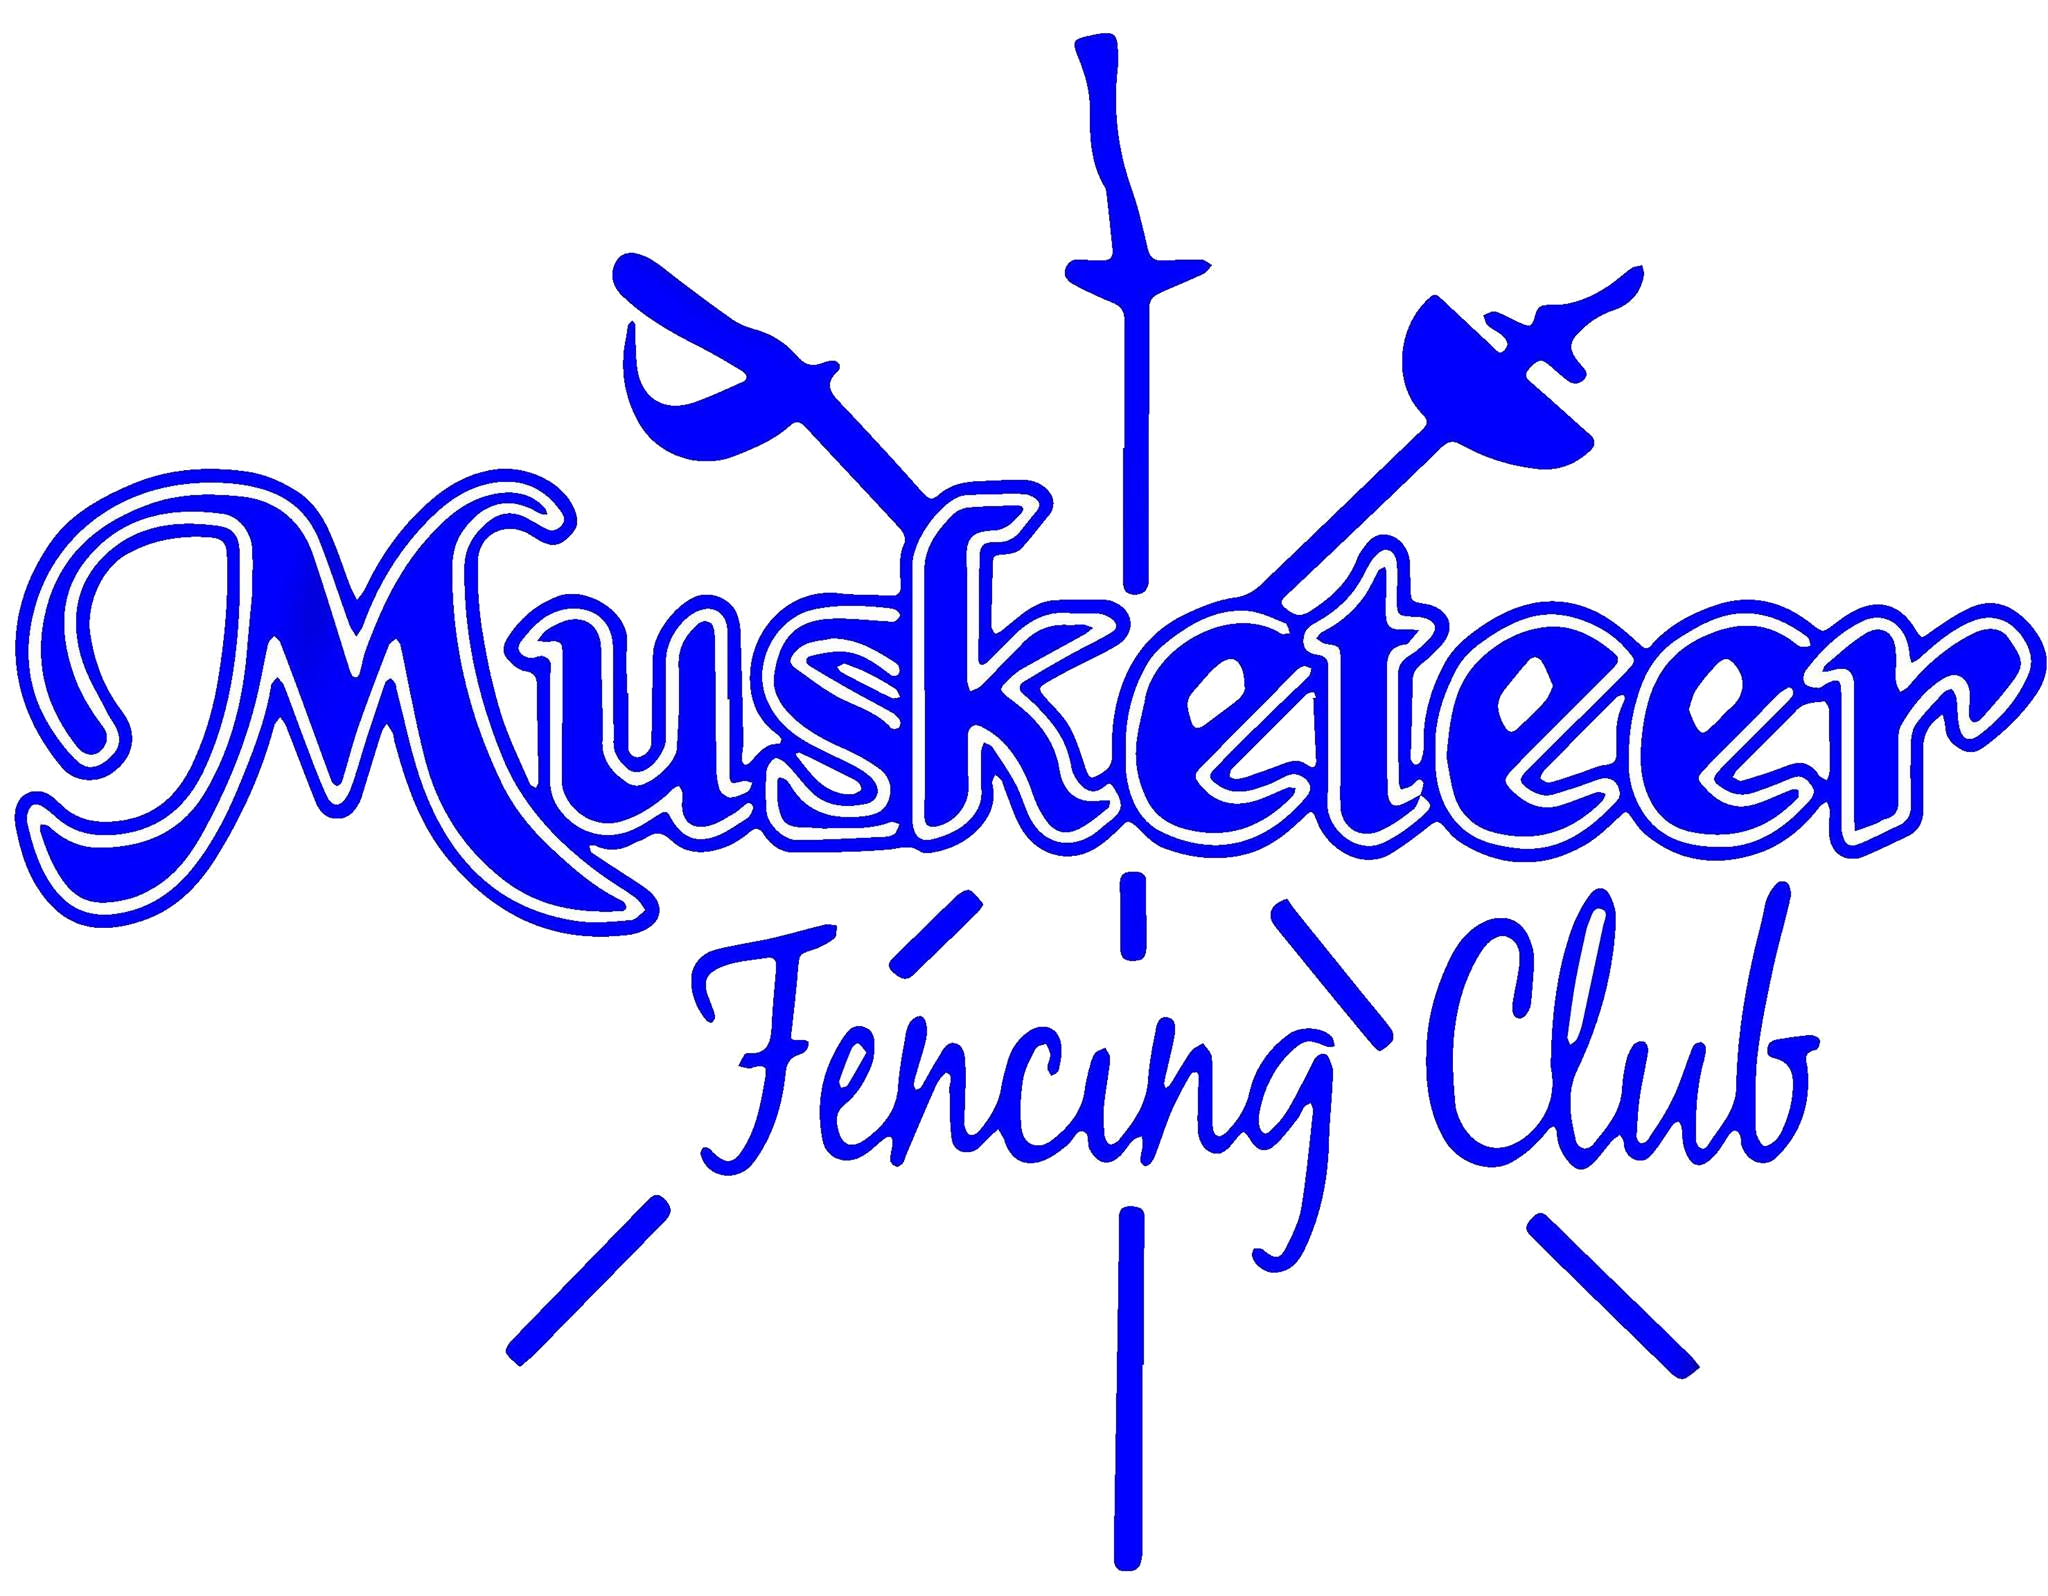 Musketeer Fencing Club